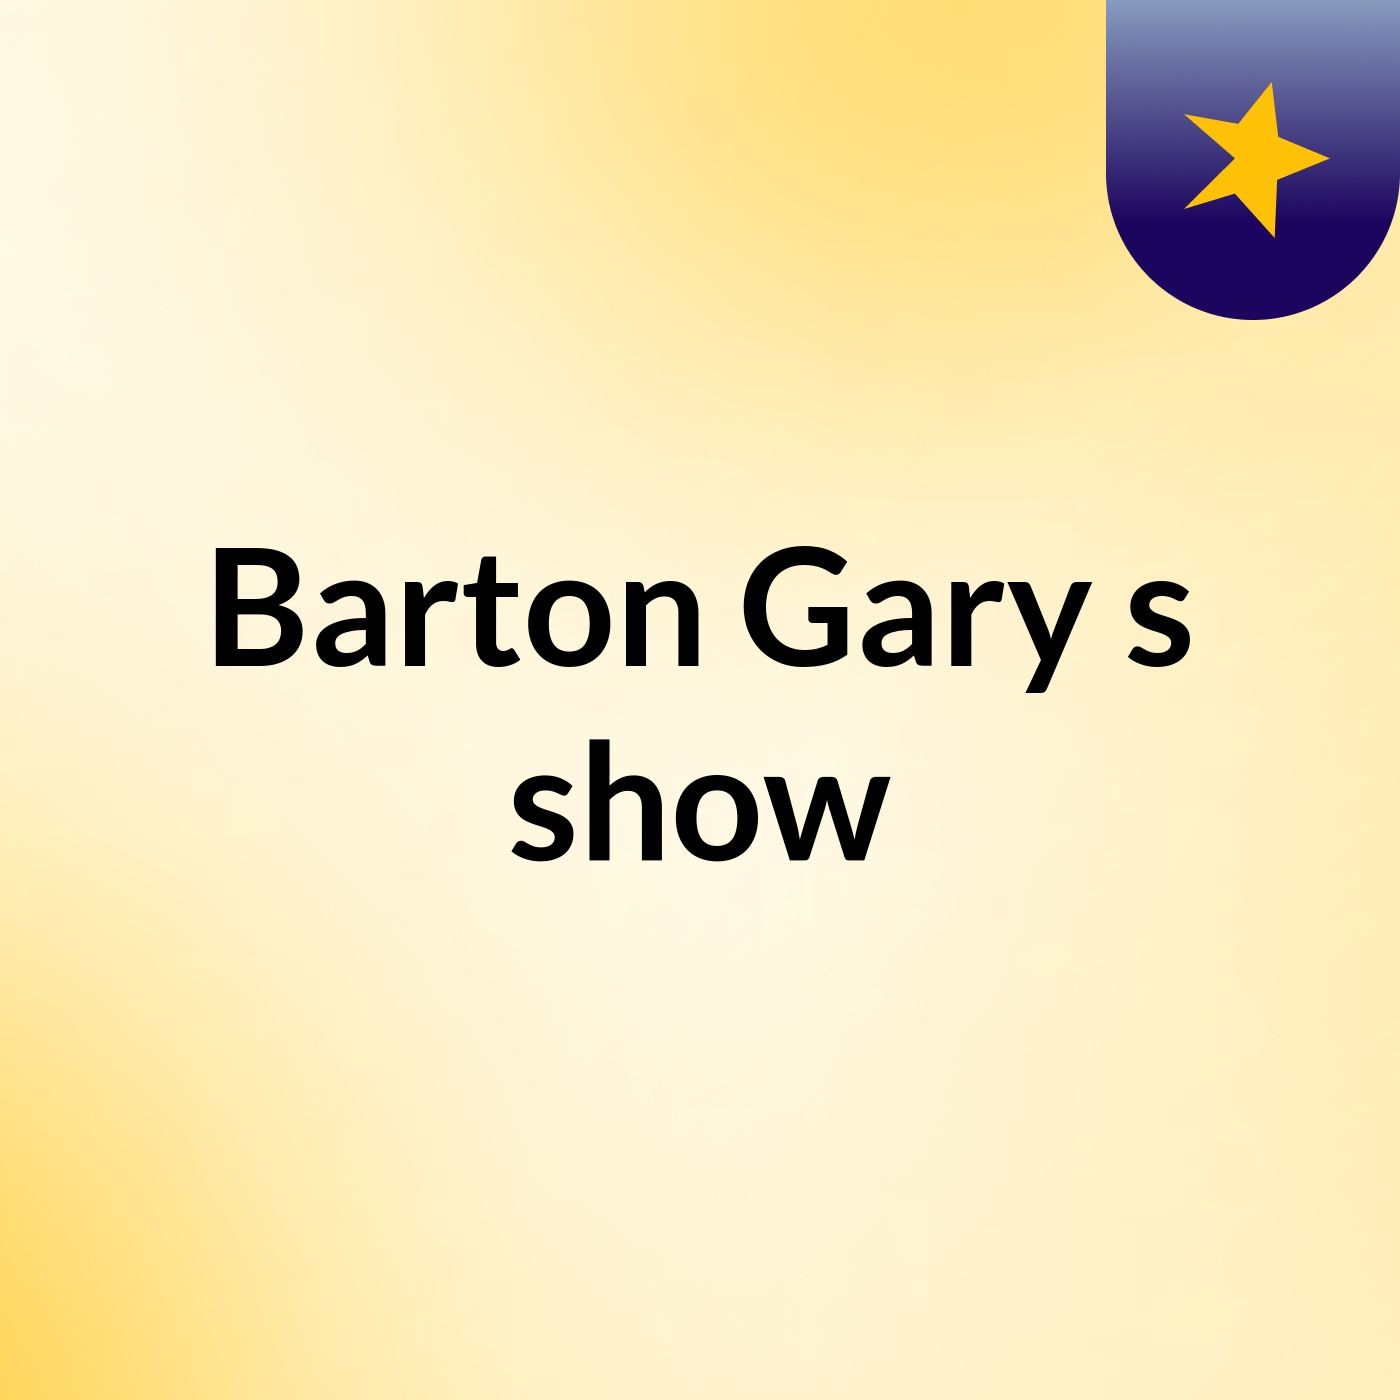 Episode 7 - Barton Gary's show